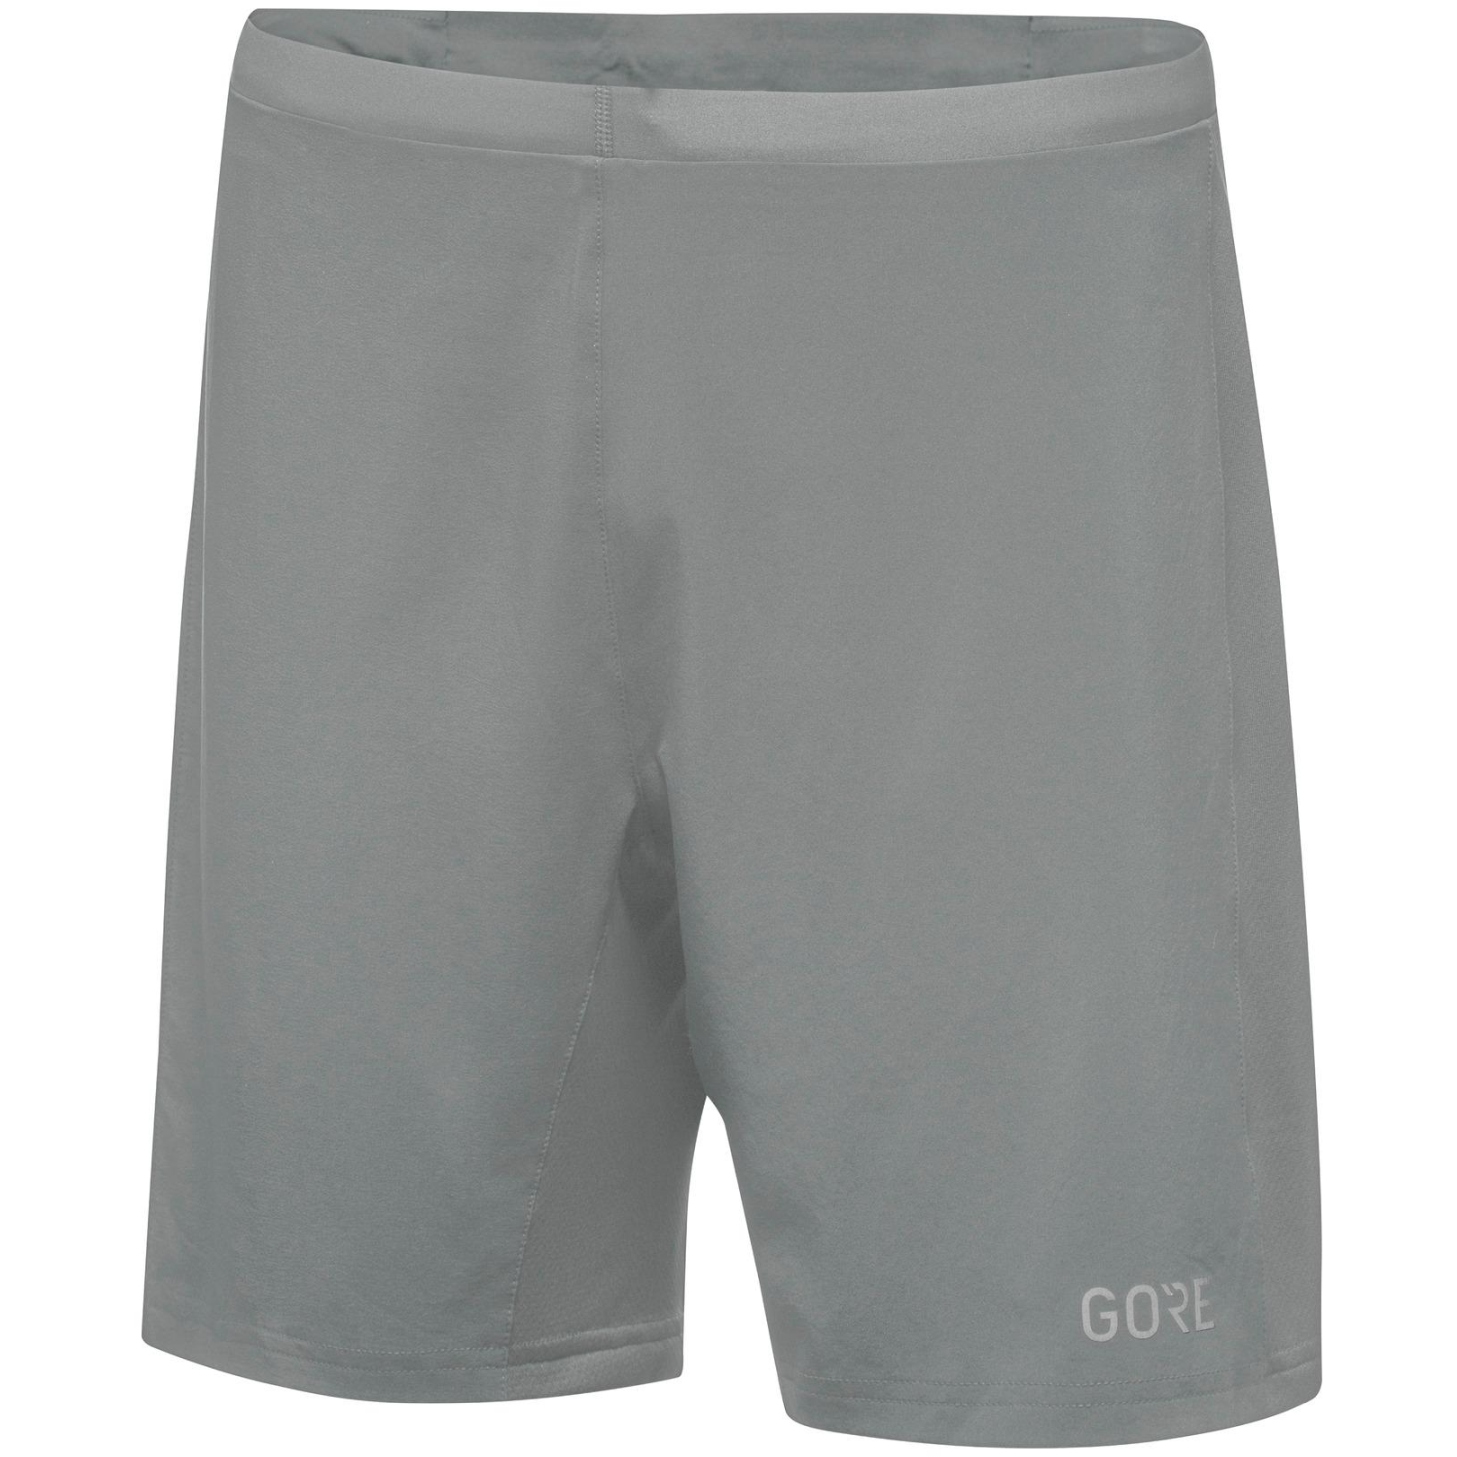 Produktbild von GOREWEAR R5 2in1 Shorts - lab gray BF00